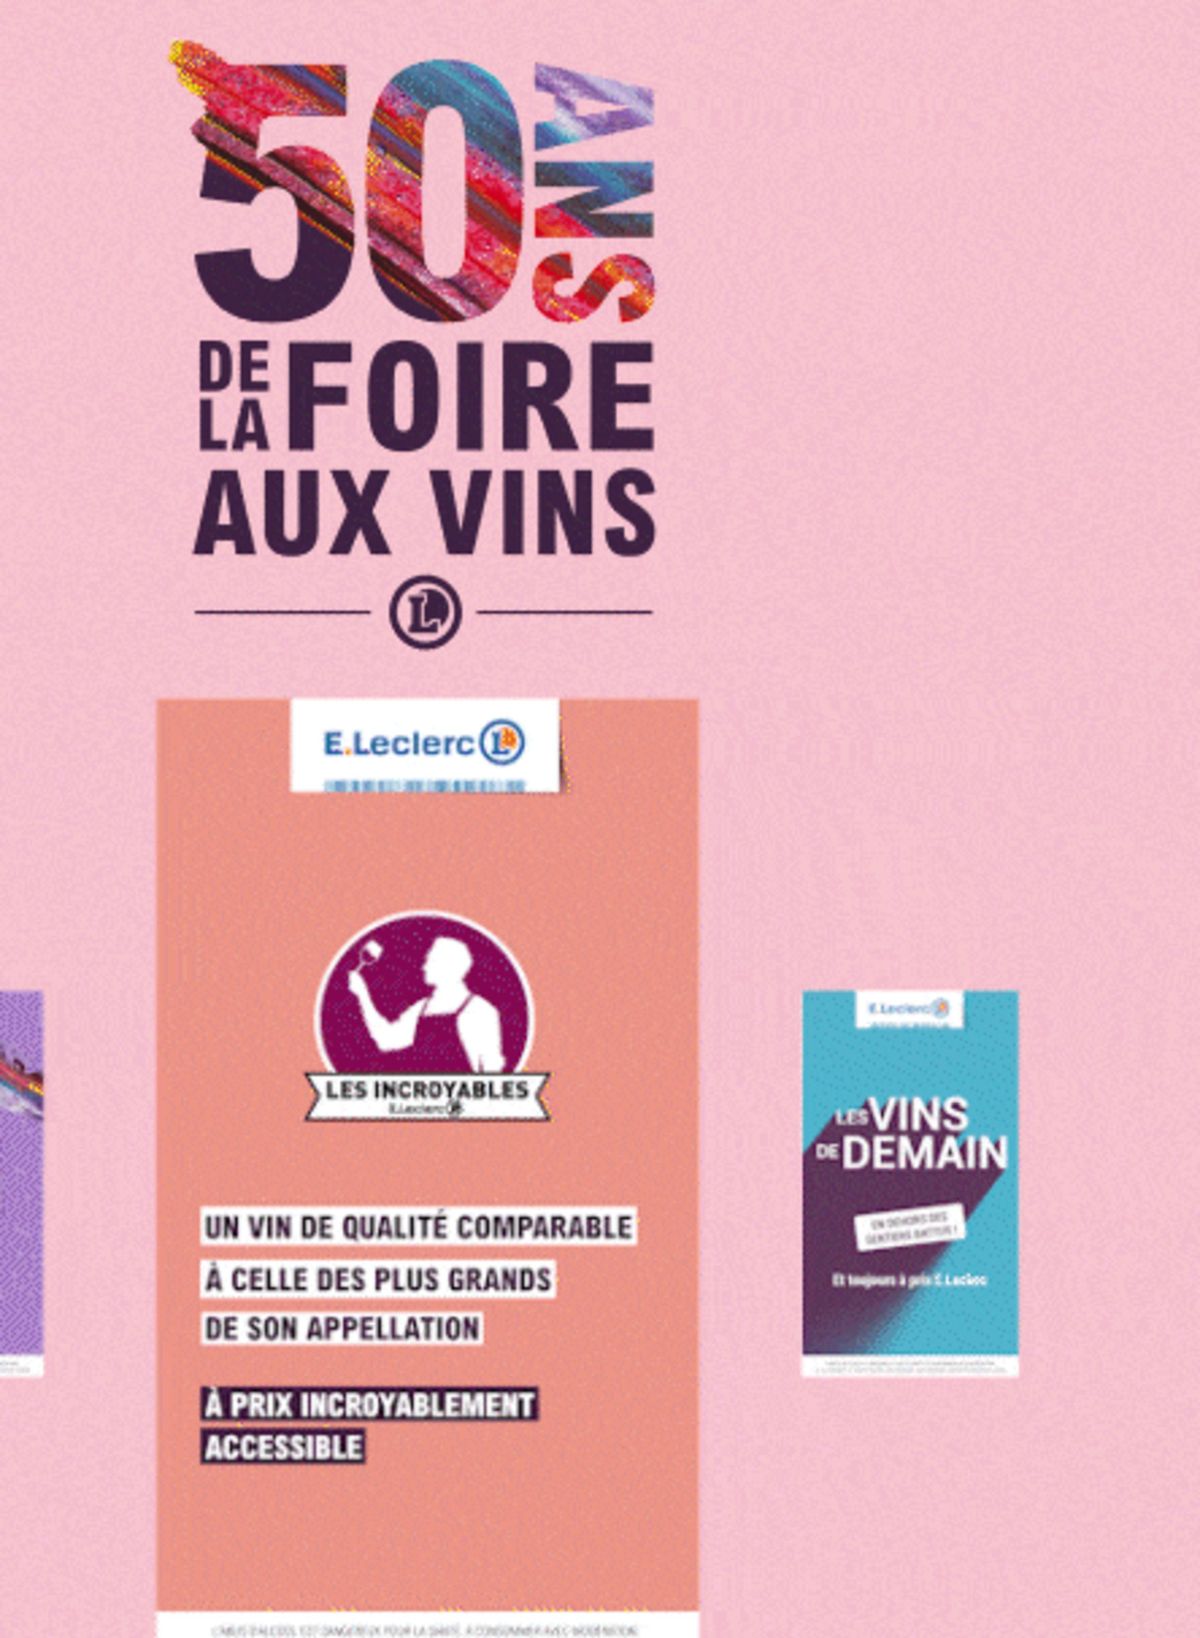 Catalogue Foire Aux Vins - Mixte, page 00681